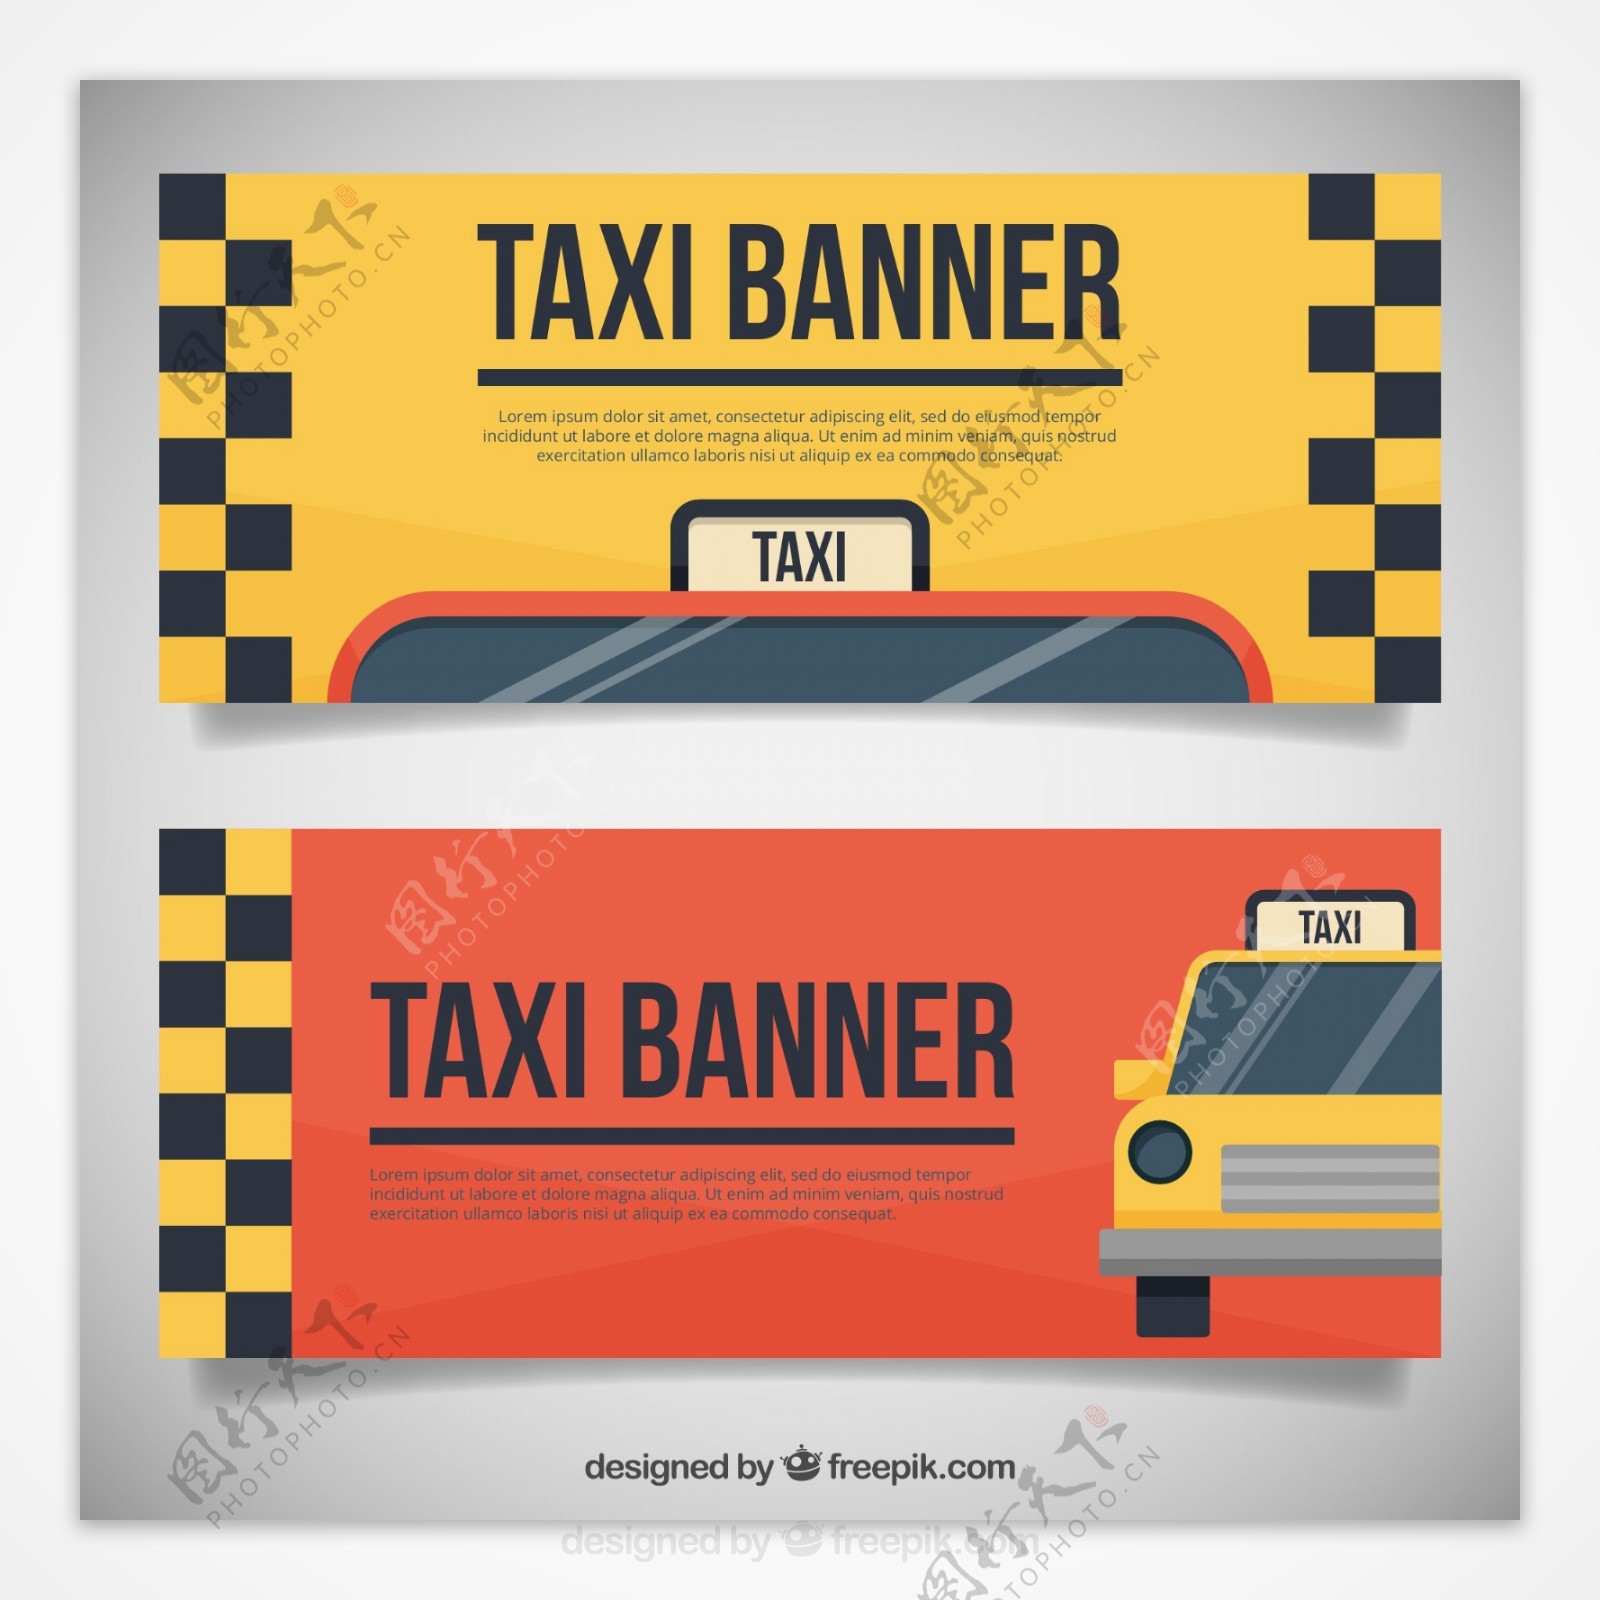 两个可爱的出租车横幅包